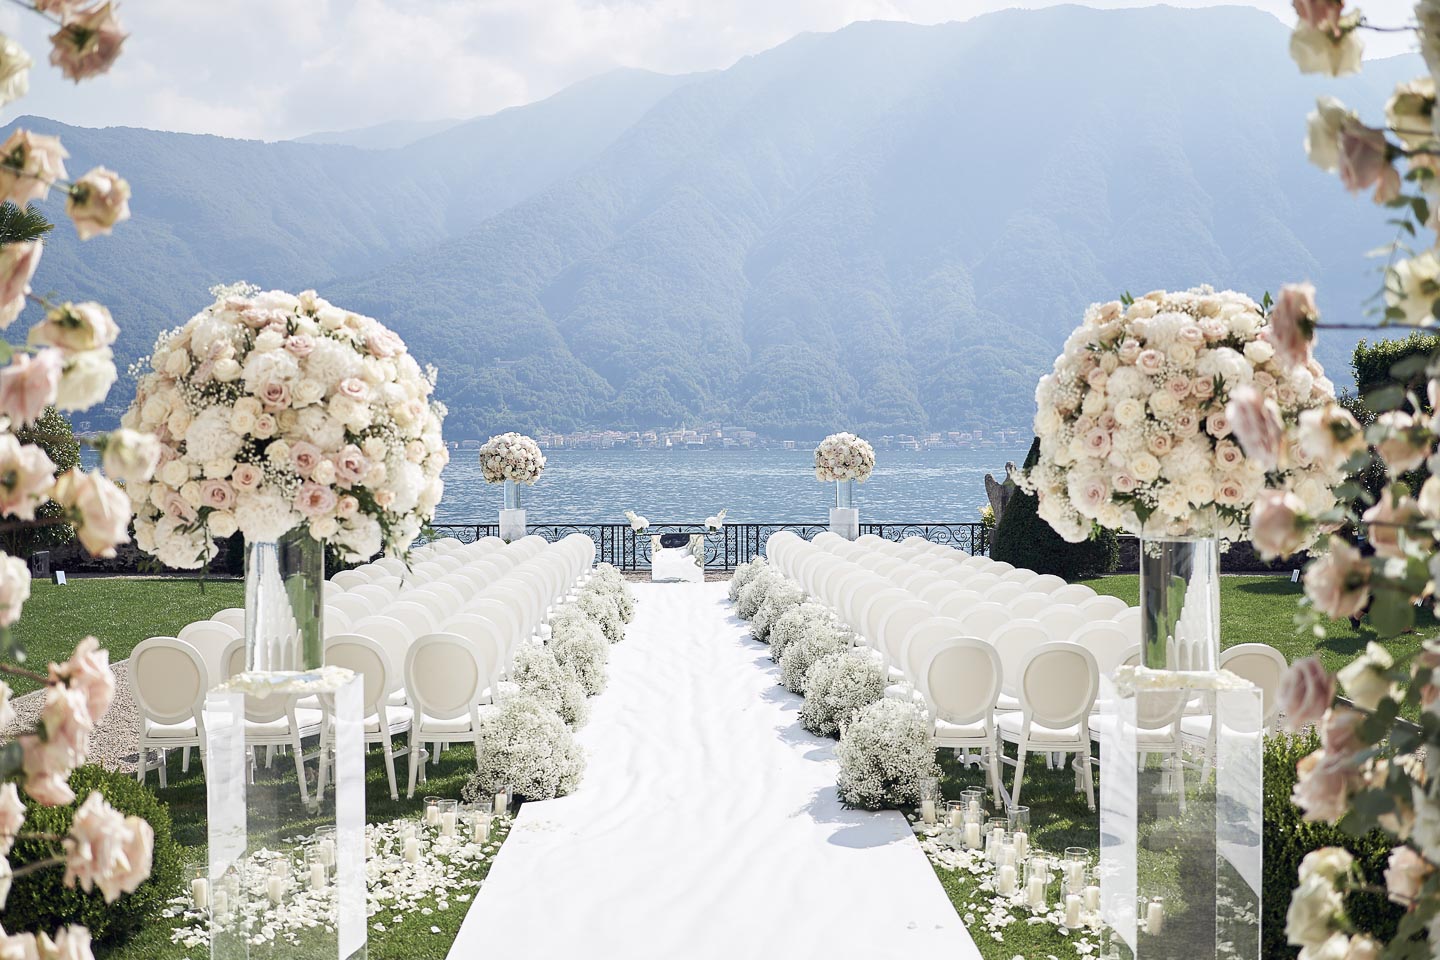 villa balbiano event venue lake como luxury wedding decor ceremony white florals